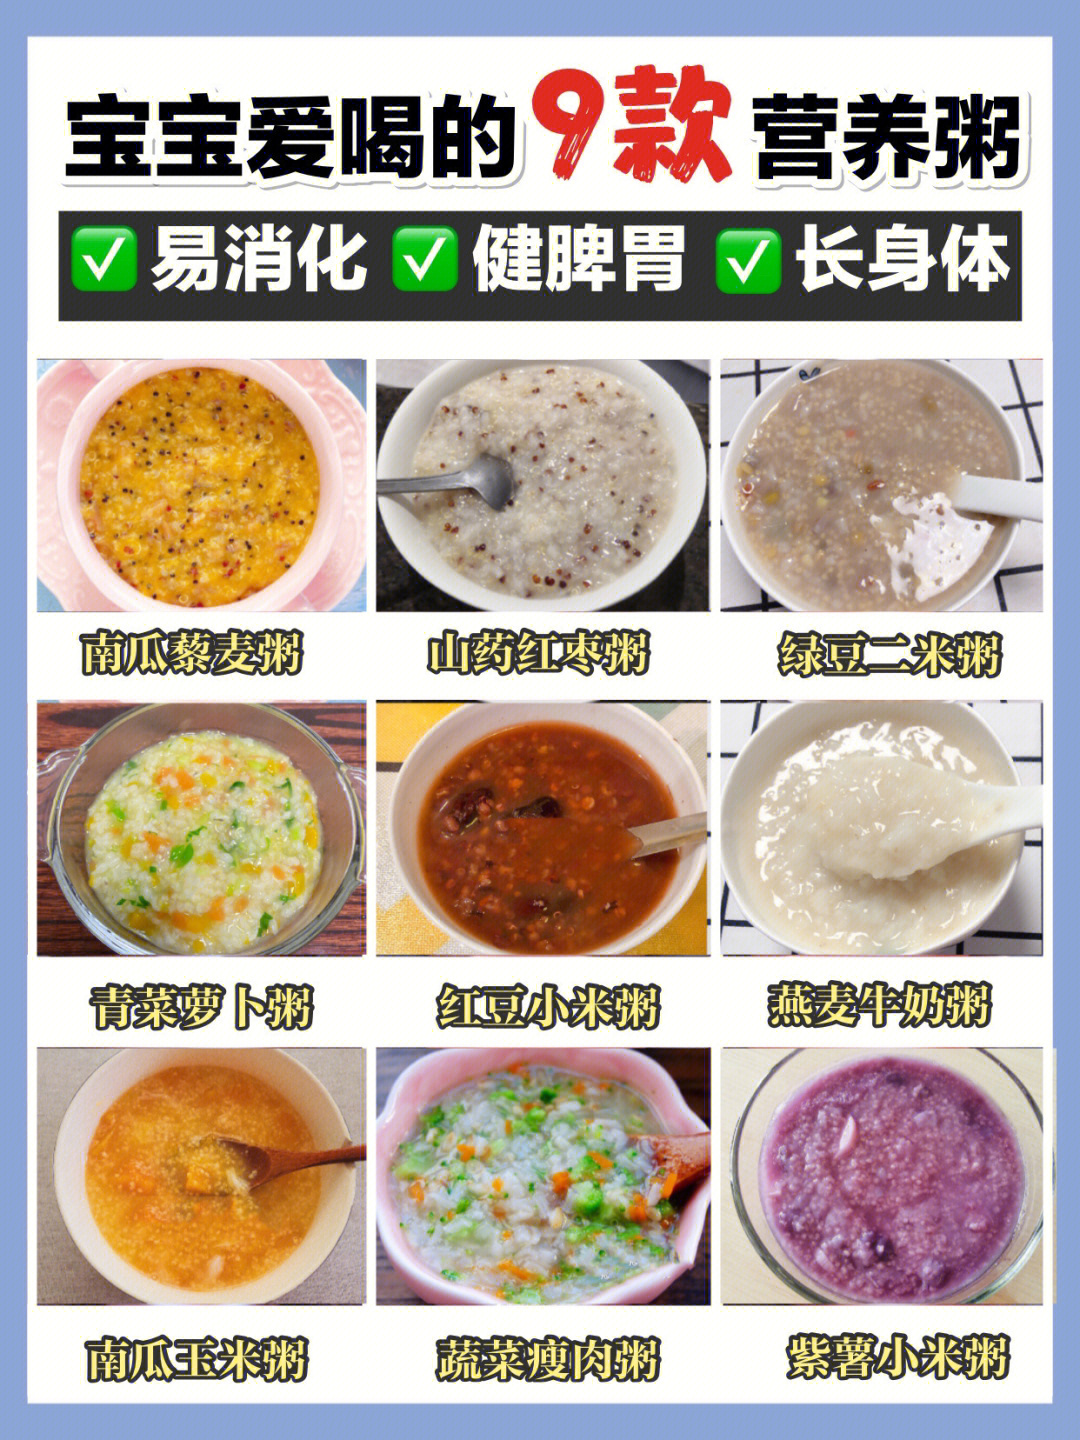 大米小米,杂粮米加不同的食材,煮粥给宝宝喝,91营养很丰富对宝宝的